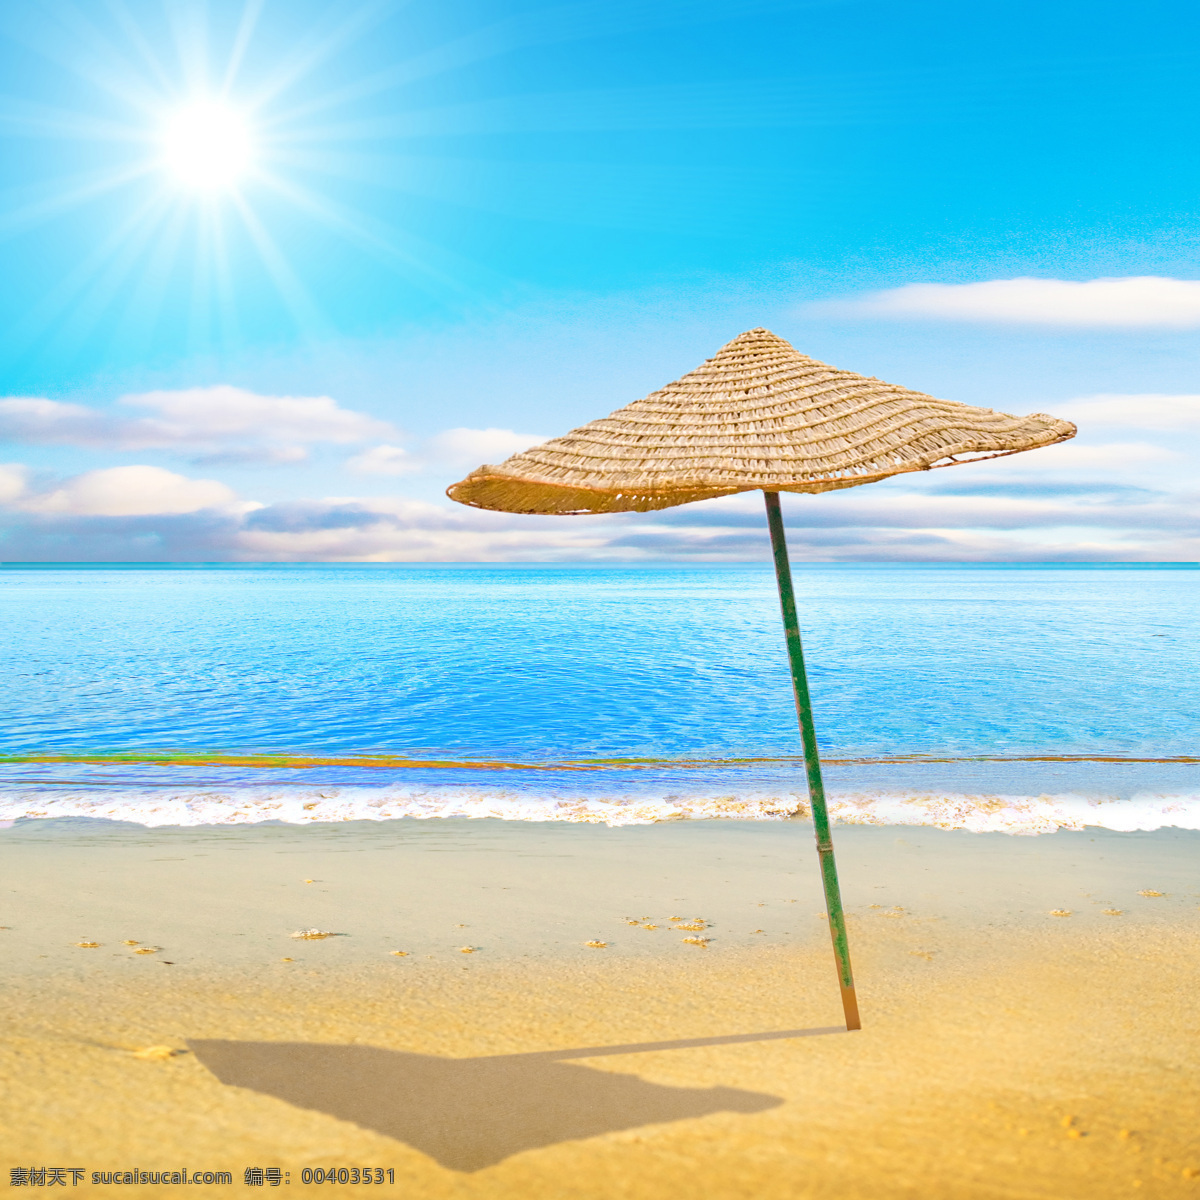 沙滩 太阳伞 素材图片 伞 大海 海水 天空 阳光 自然风光 休闲旅游 热带风光 大海图片 风景图片